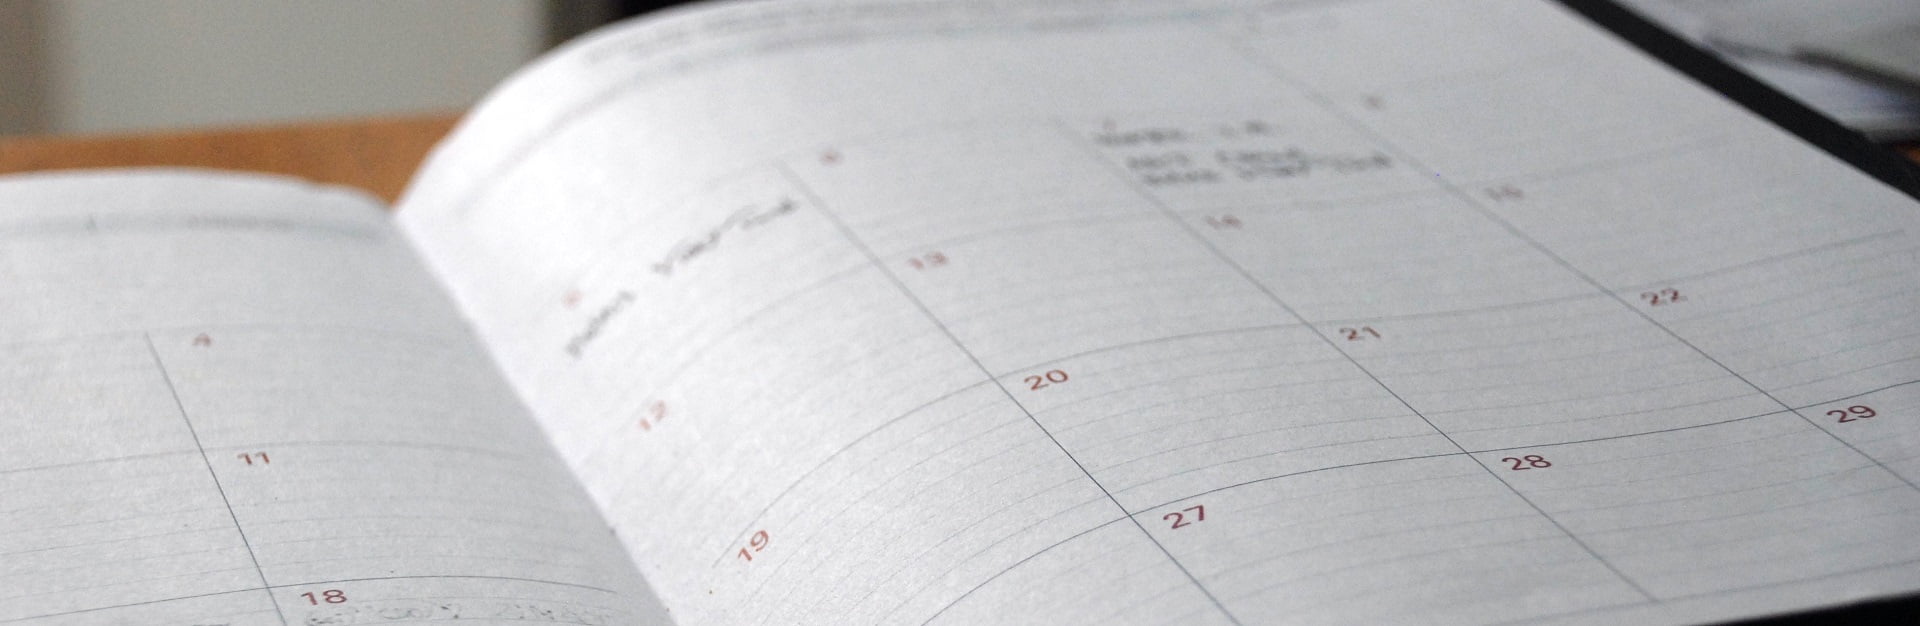 Bildausschnitt, der einen aufgeschlagenen Terminkalender zeigt, der auf einem Schreibtisch liegt